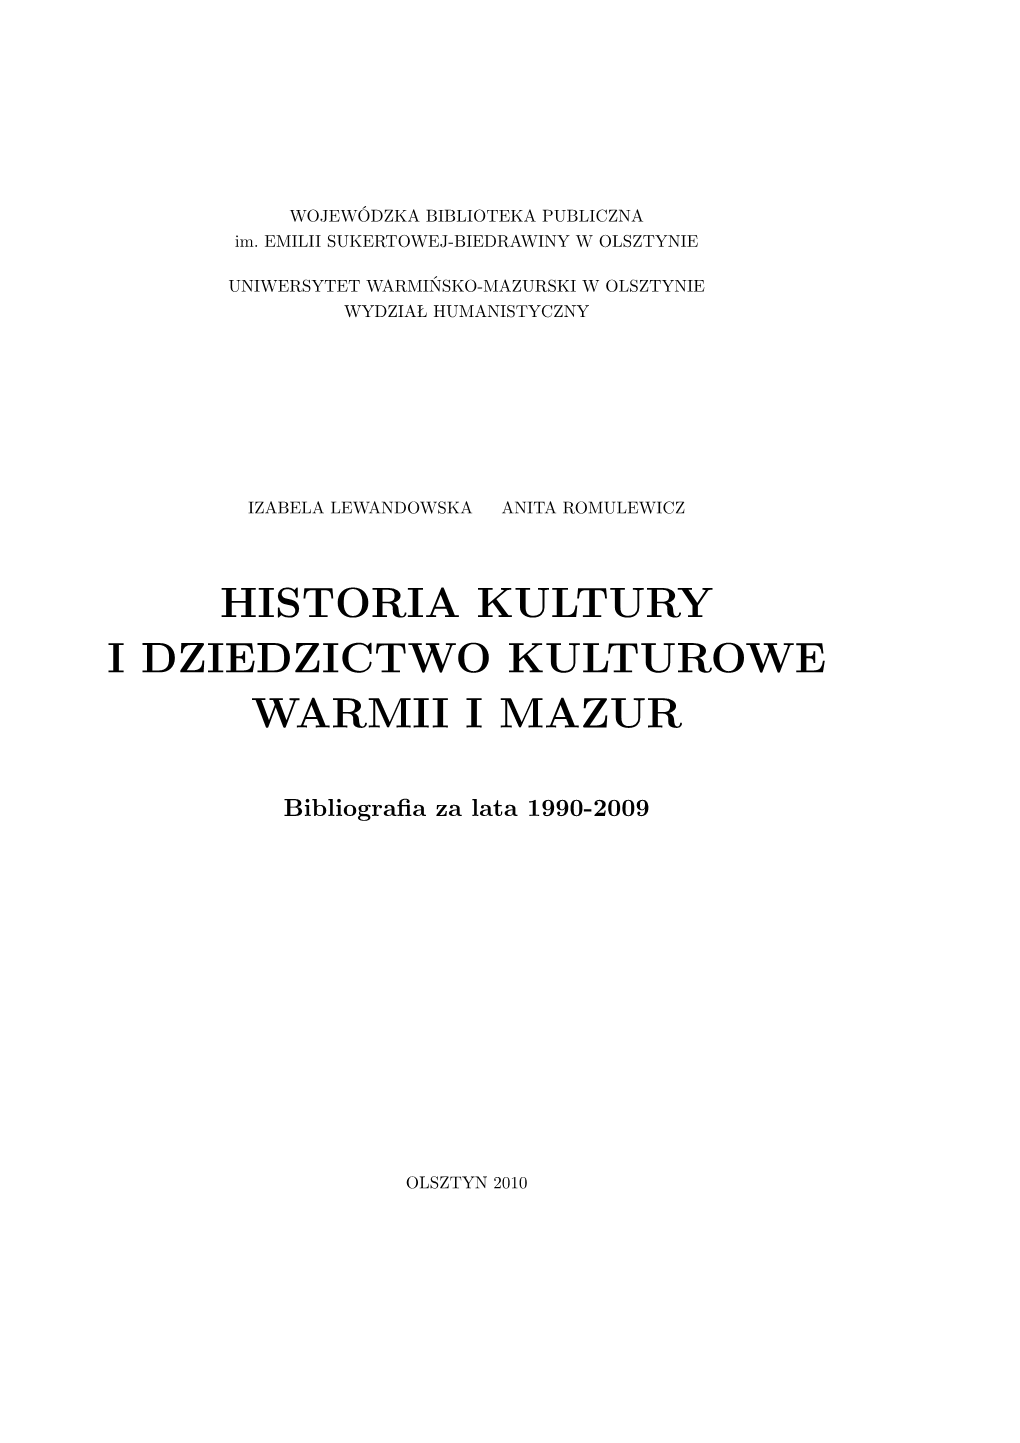 Historia Kultury I Dziedzictwo Kulturowe. Bibliografia.Pdf